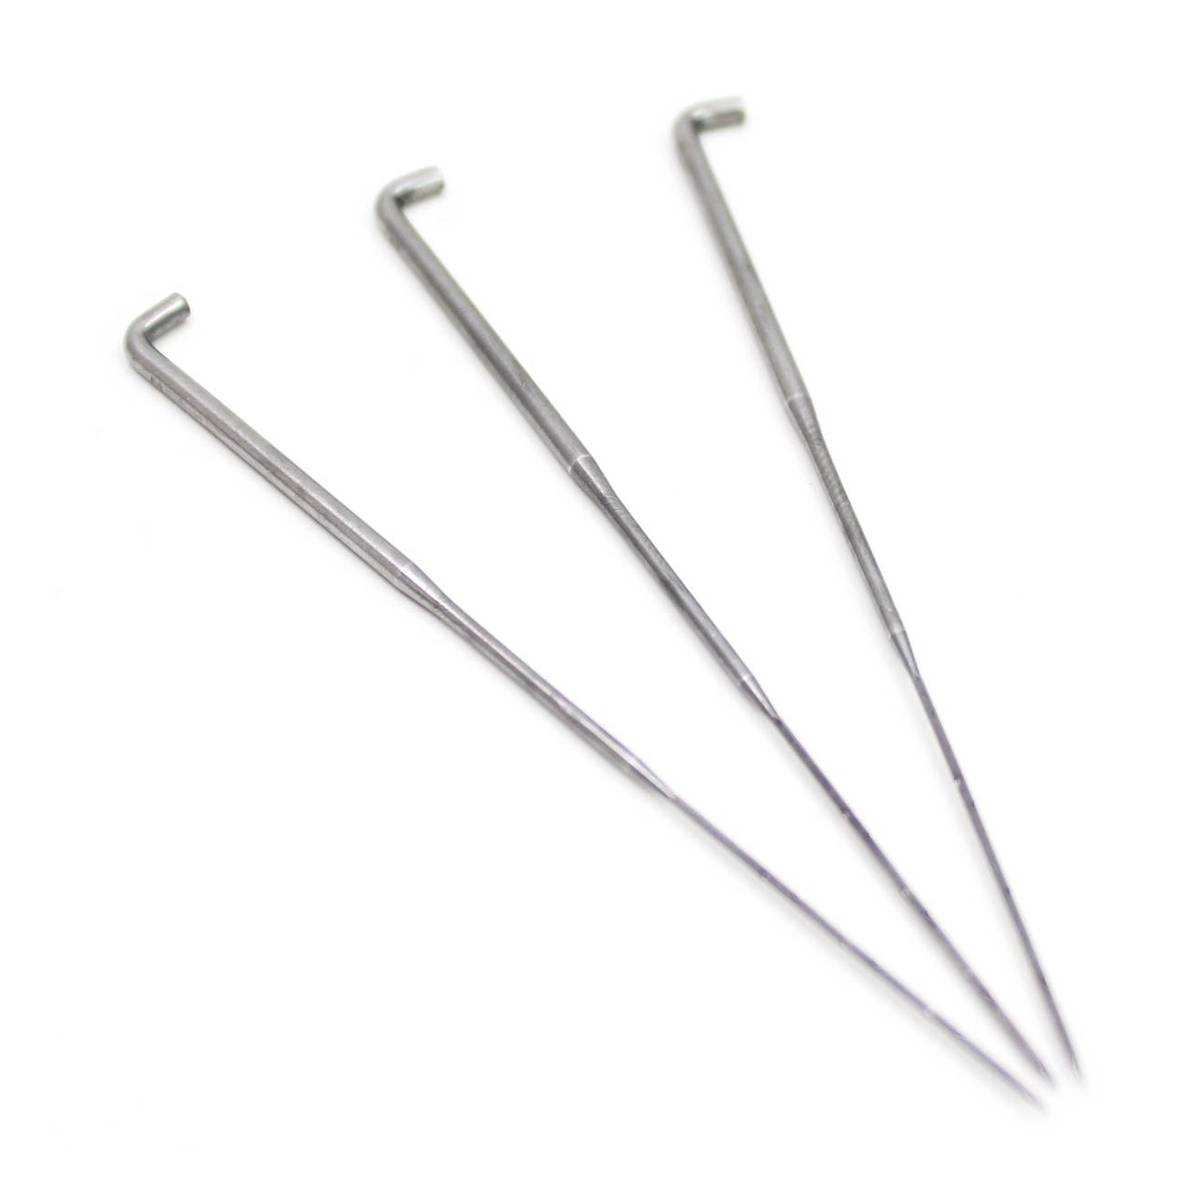 2 Pack Needle Felting Tools,Pen Style Needle Felting Tool with 3 Needles  and Punch Style Felting Needle Tool with 7 Barbed Needles,Wool Needles Felt